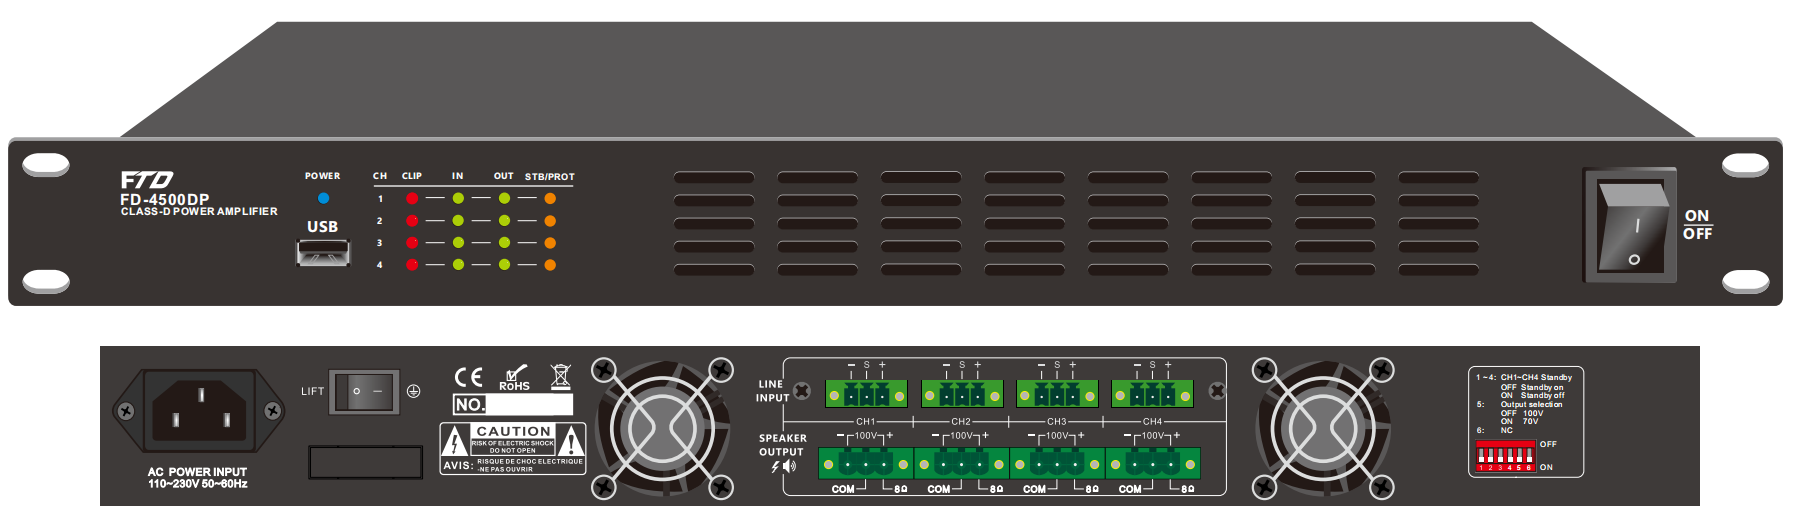 FD-4240DP 4CH 240W Class-D Amplifier with DSP